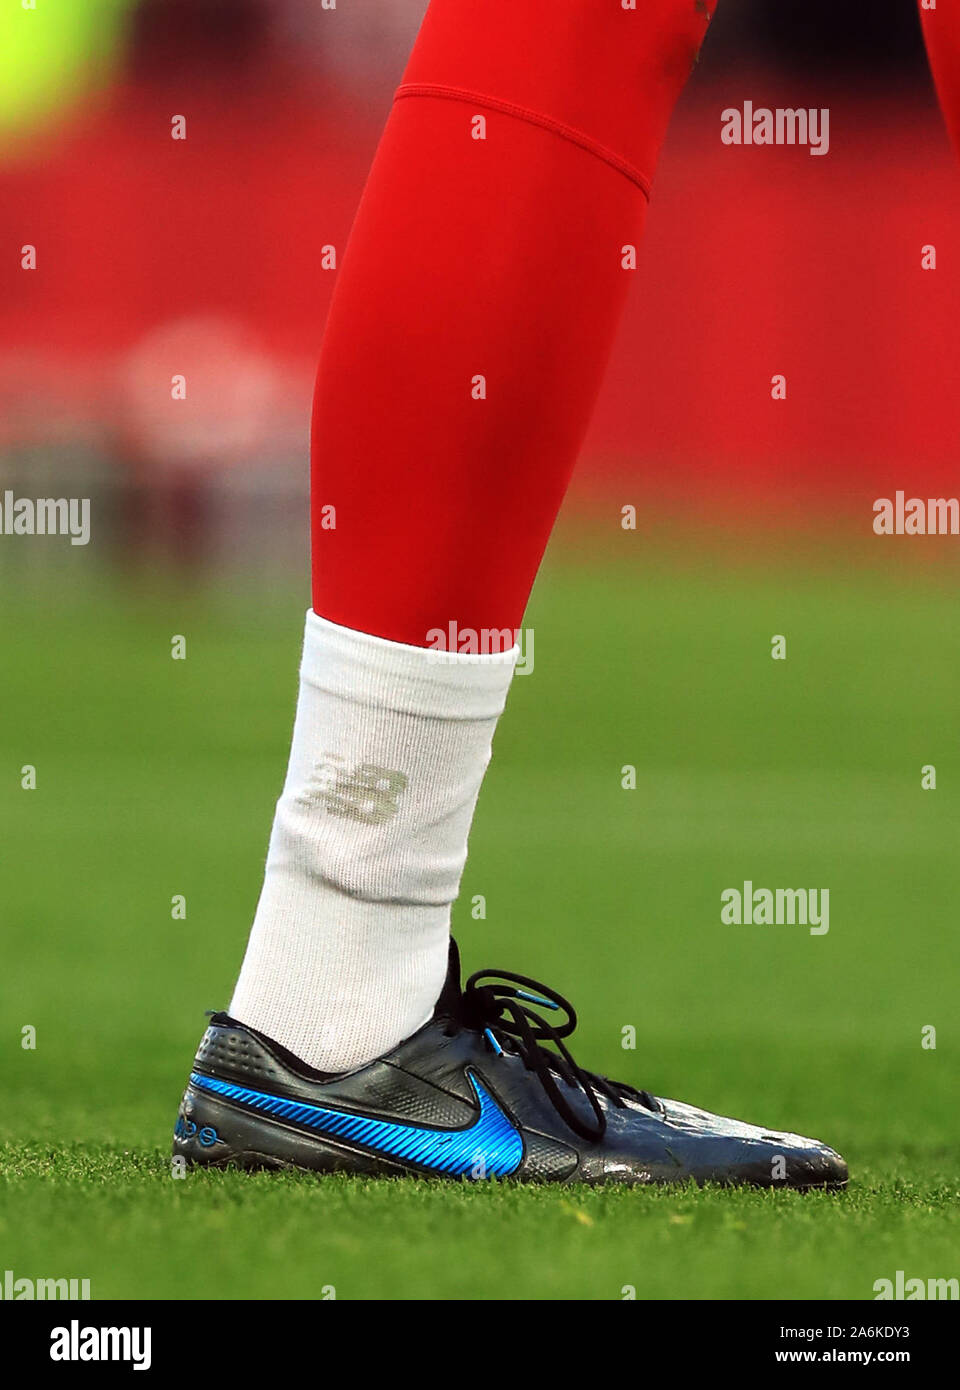 Eine allgemeine Ansicht von Liverpool Torwart Caoimhin Kelleher Socken  tragen, New Balance und Nike Fußballschuhe während der Premier League Match  in Liverpool, Liverpool Stockfotografie - Alamy